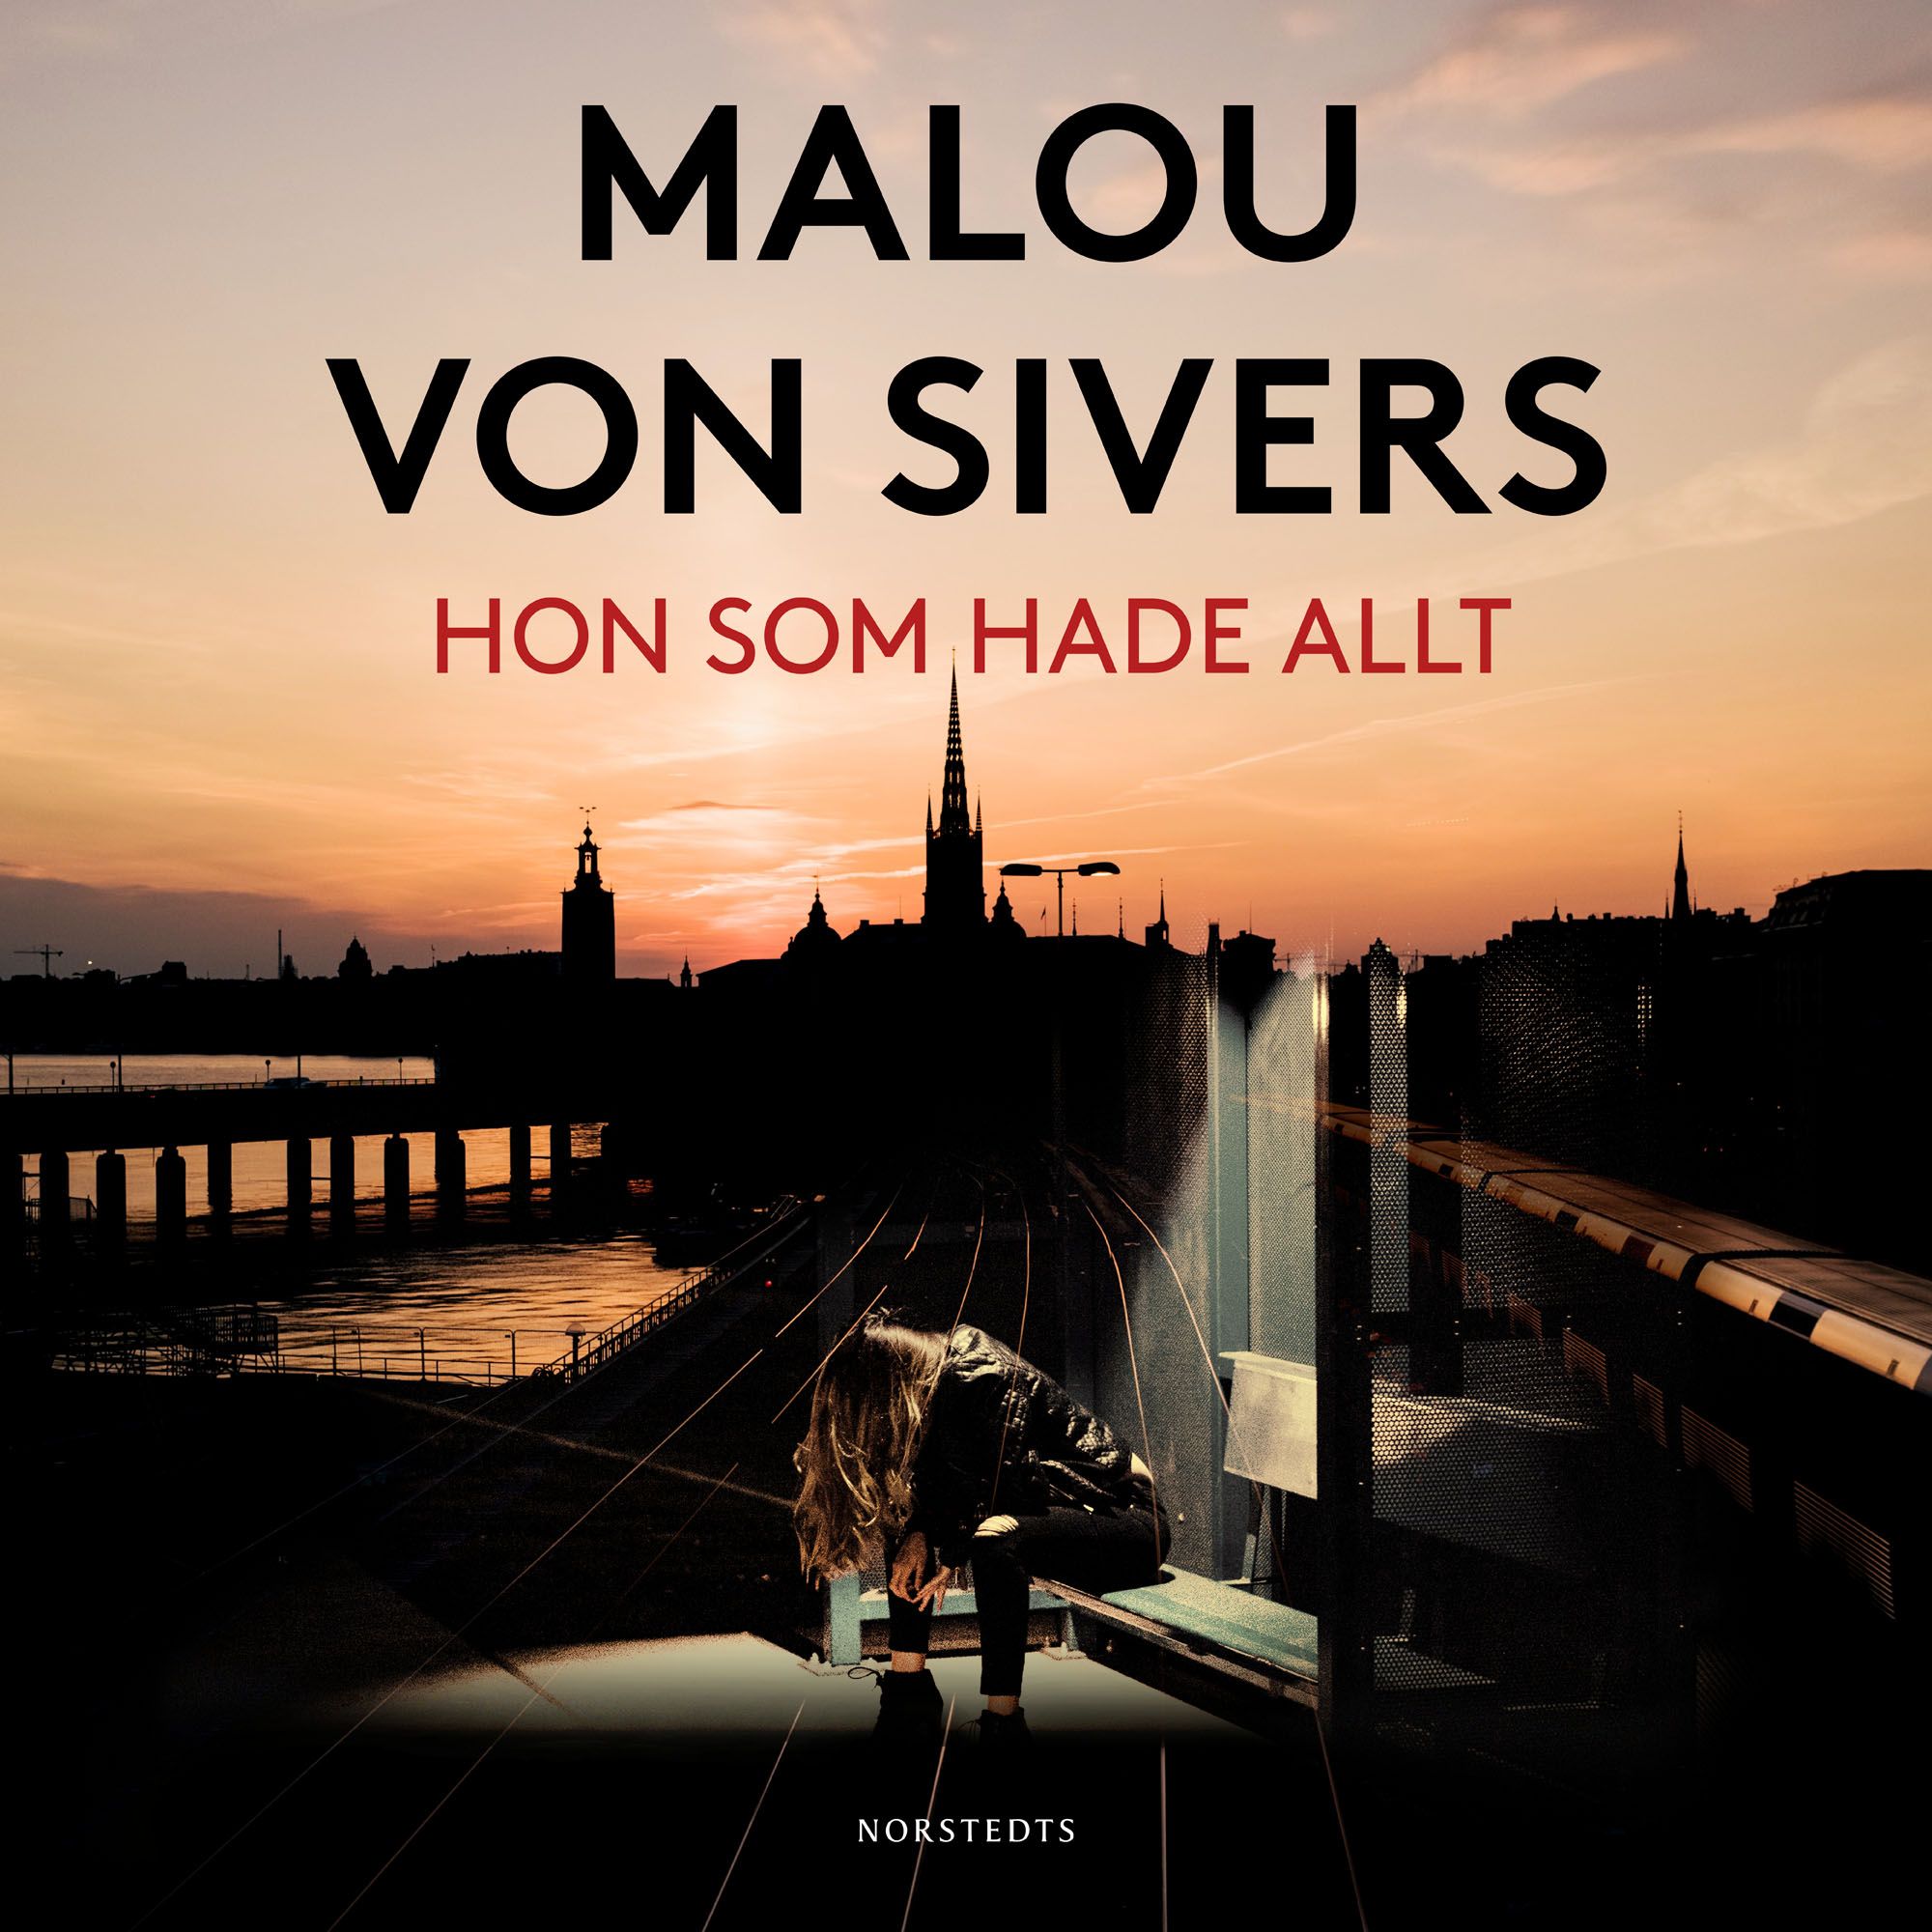 Hon som hade allt, ljudbok av Malou von Sivers